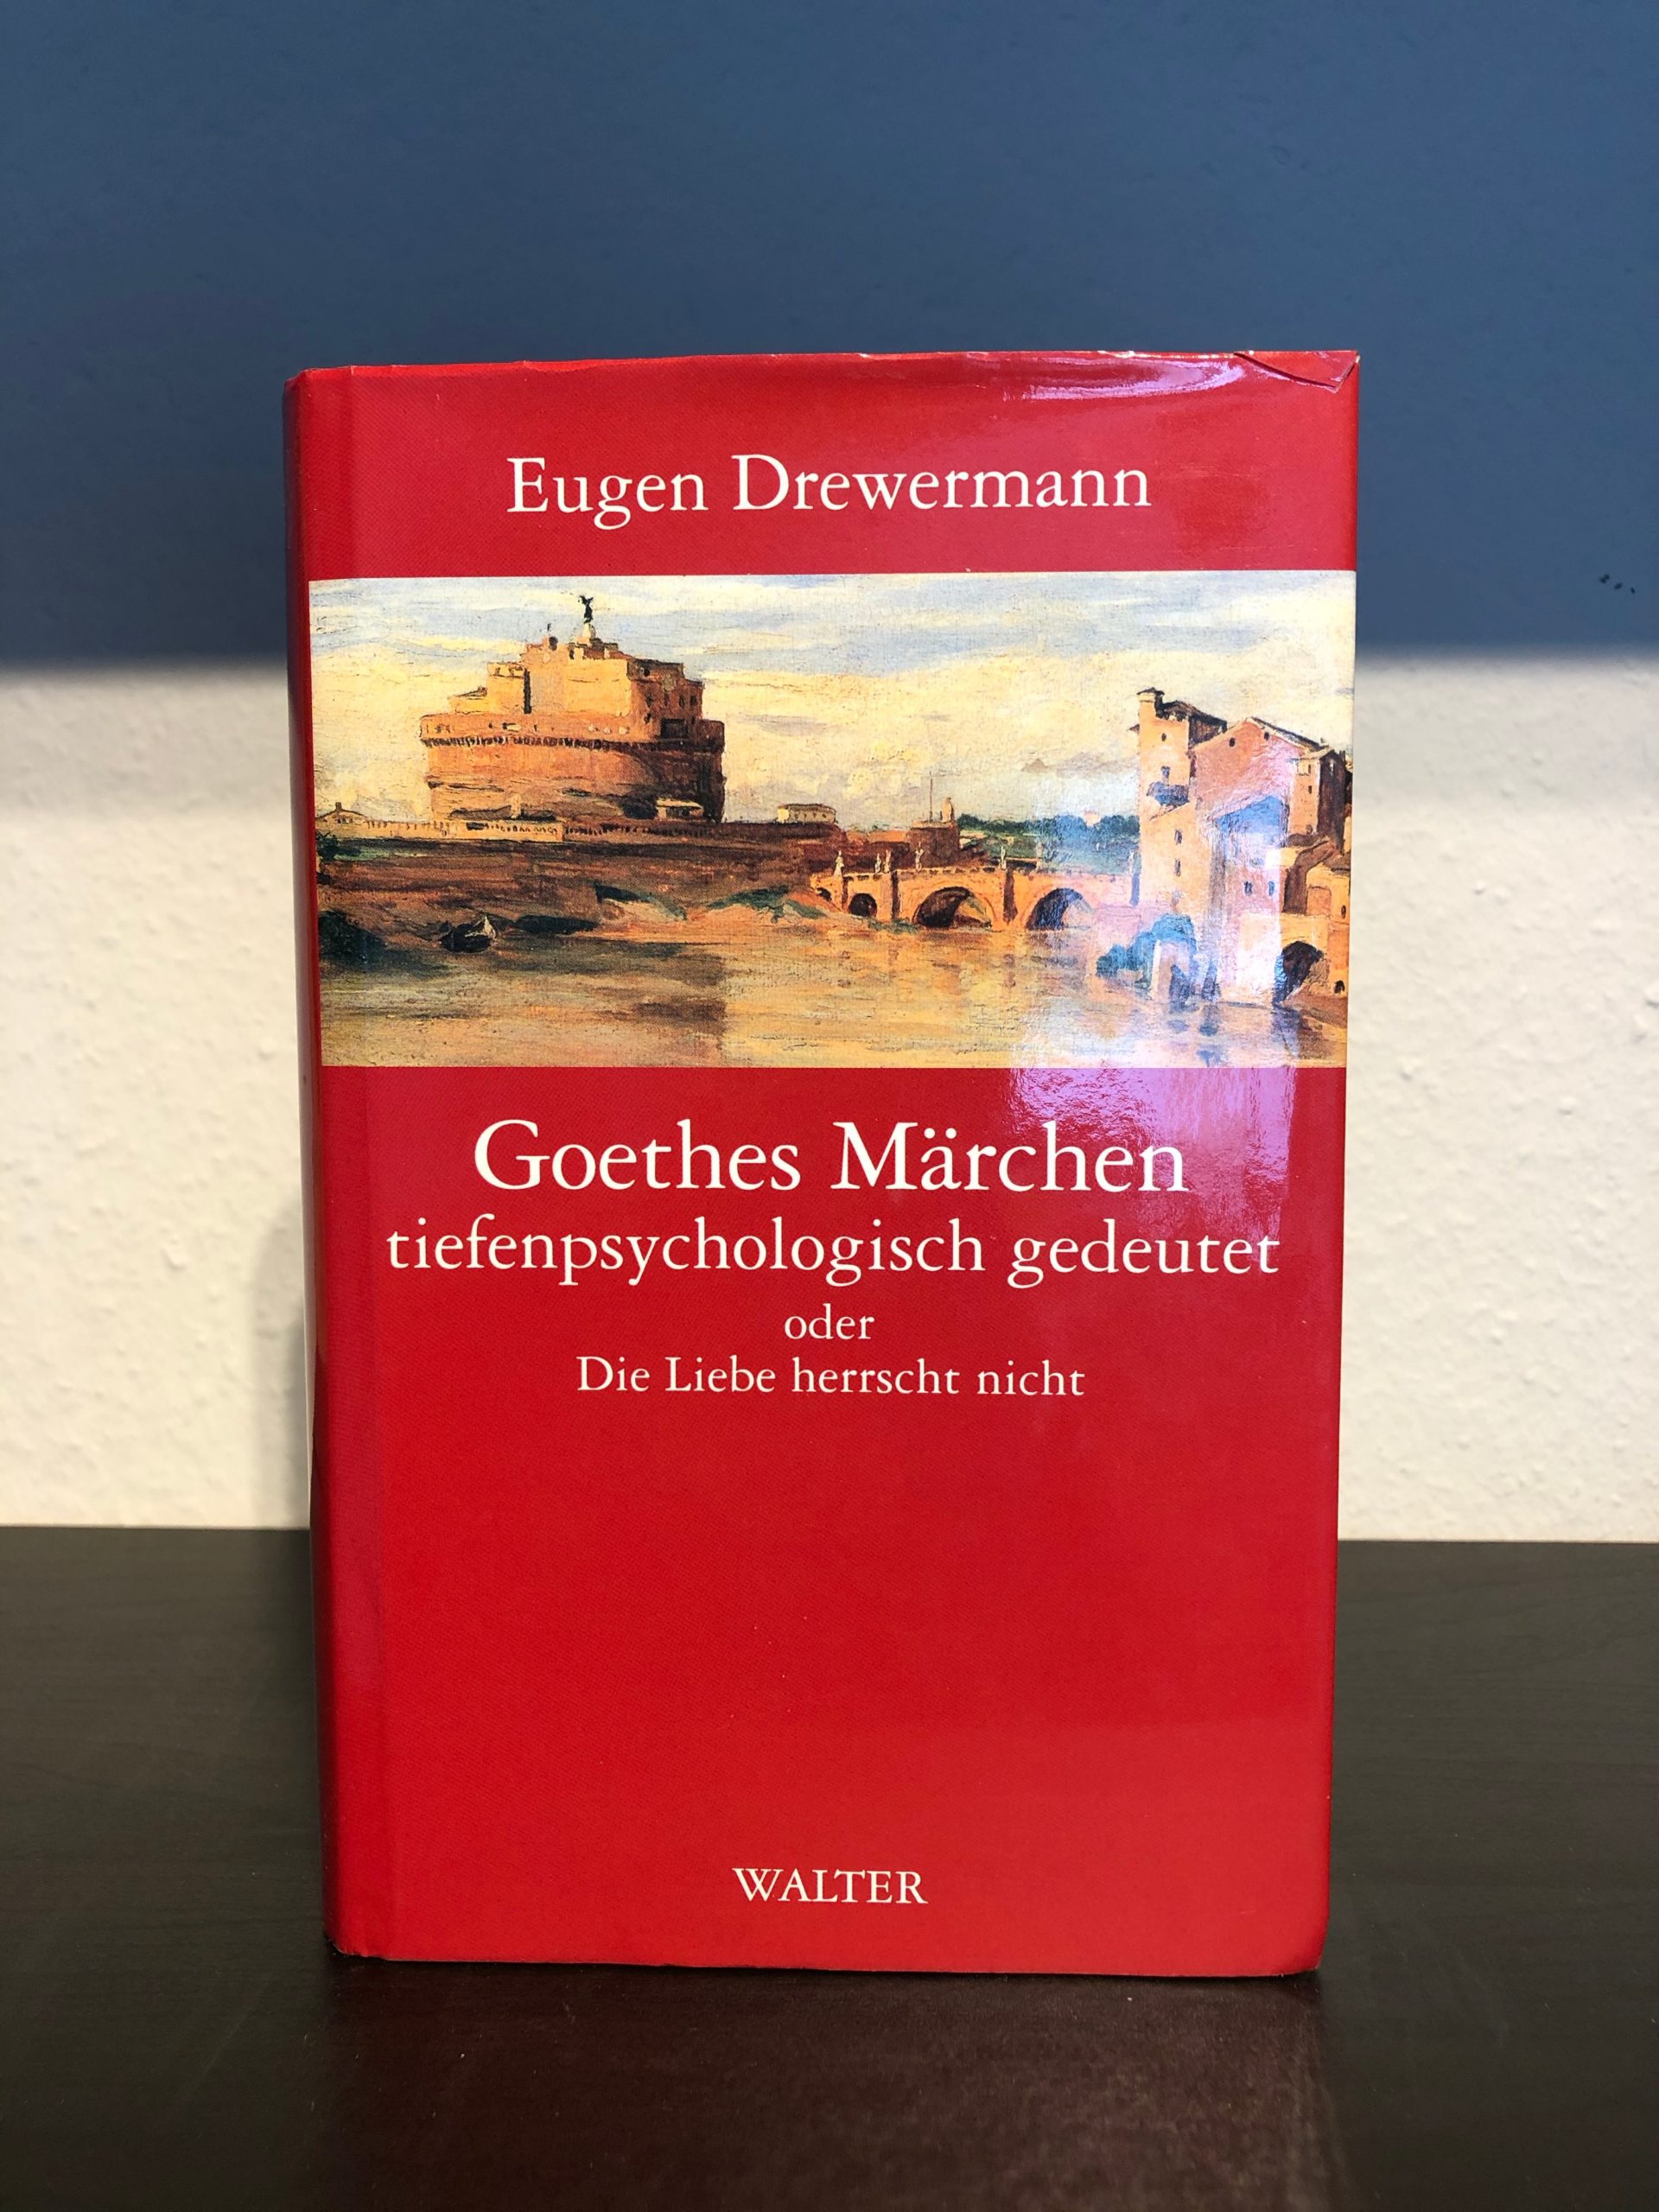 Goethes Märchen tiefenpsychologisch gedeutet - Die Liebe herrscht nicht - Eugen Drewermann main image